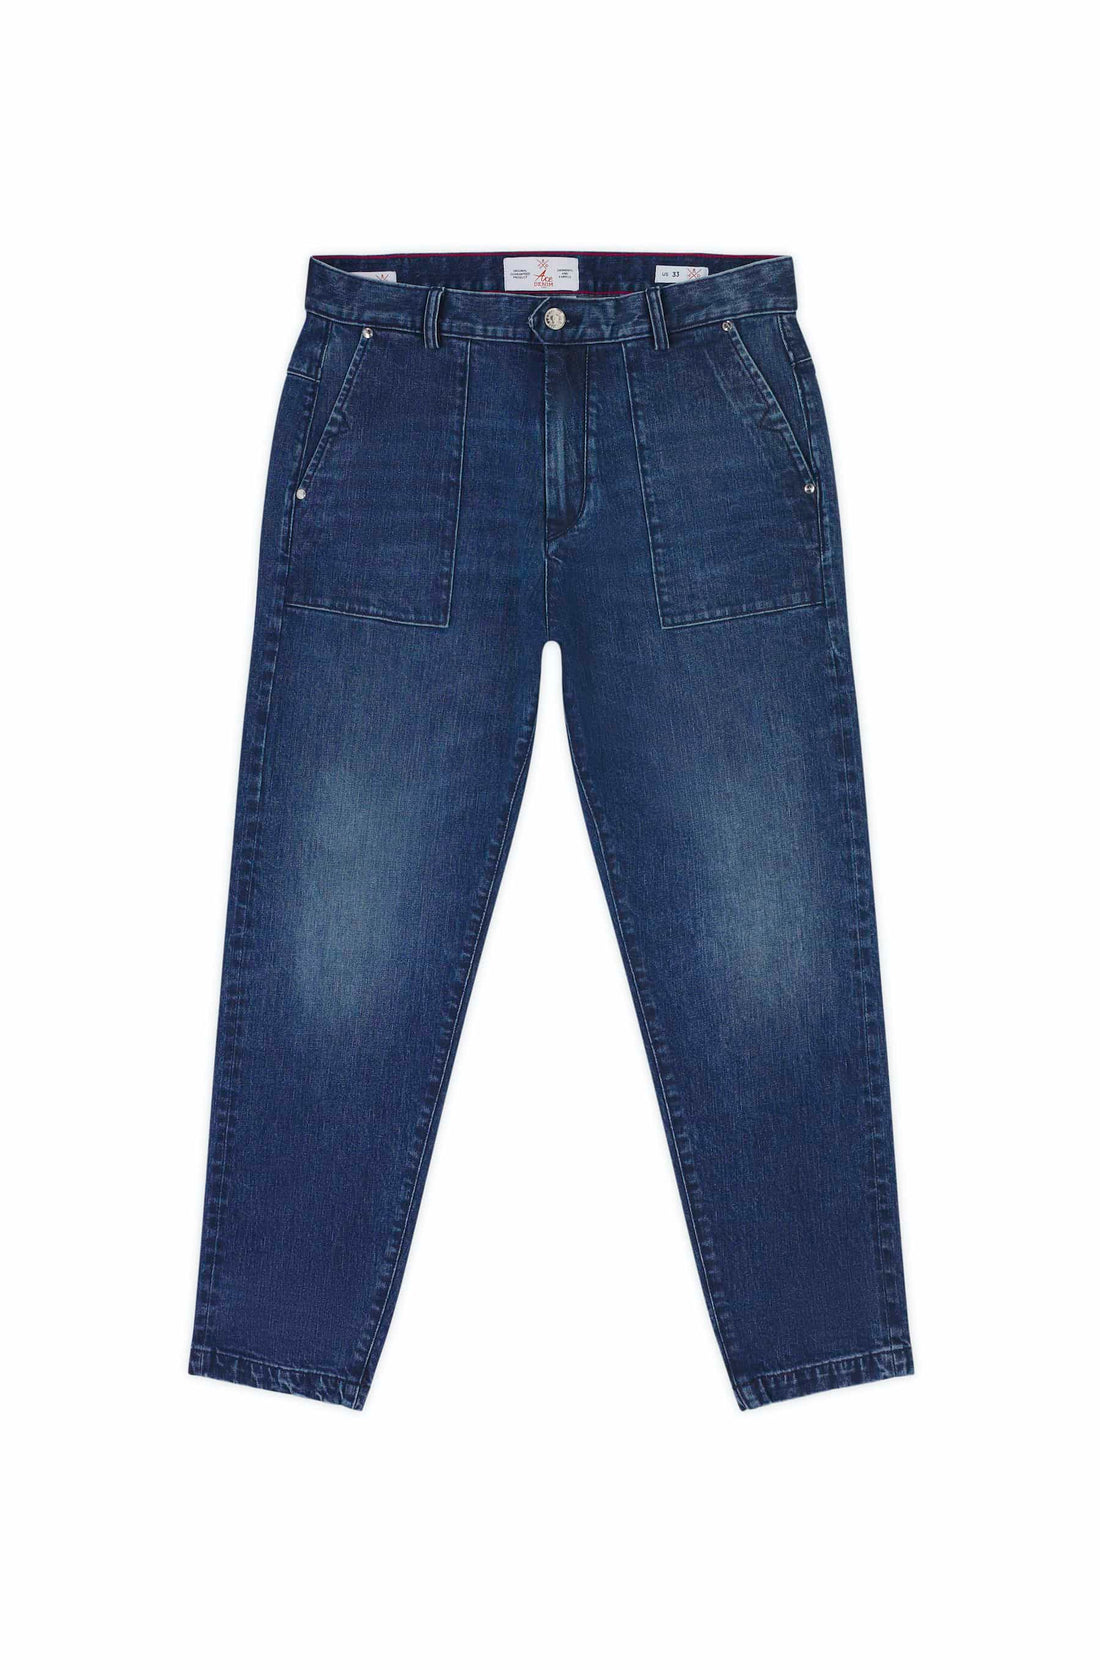 jeans homme coupe cargo bleu foncé tissu selvedge japonais